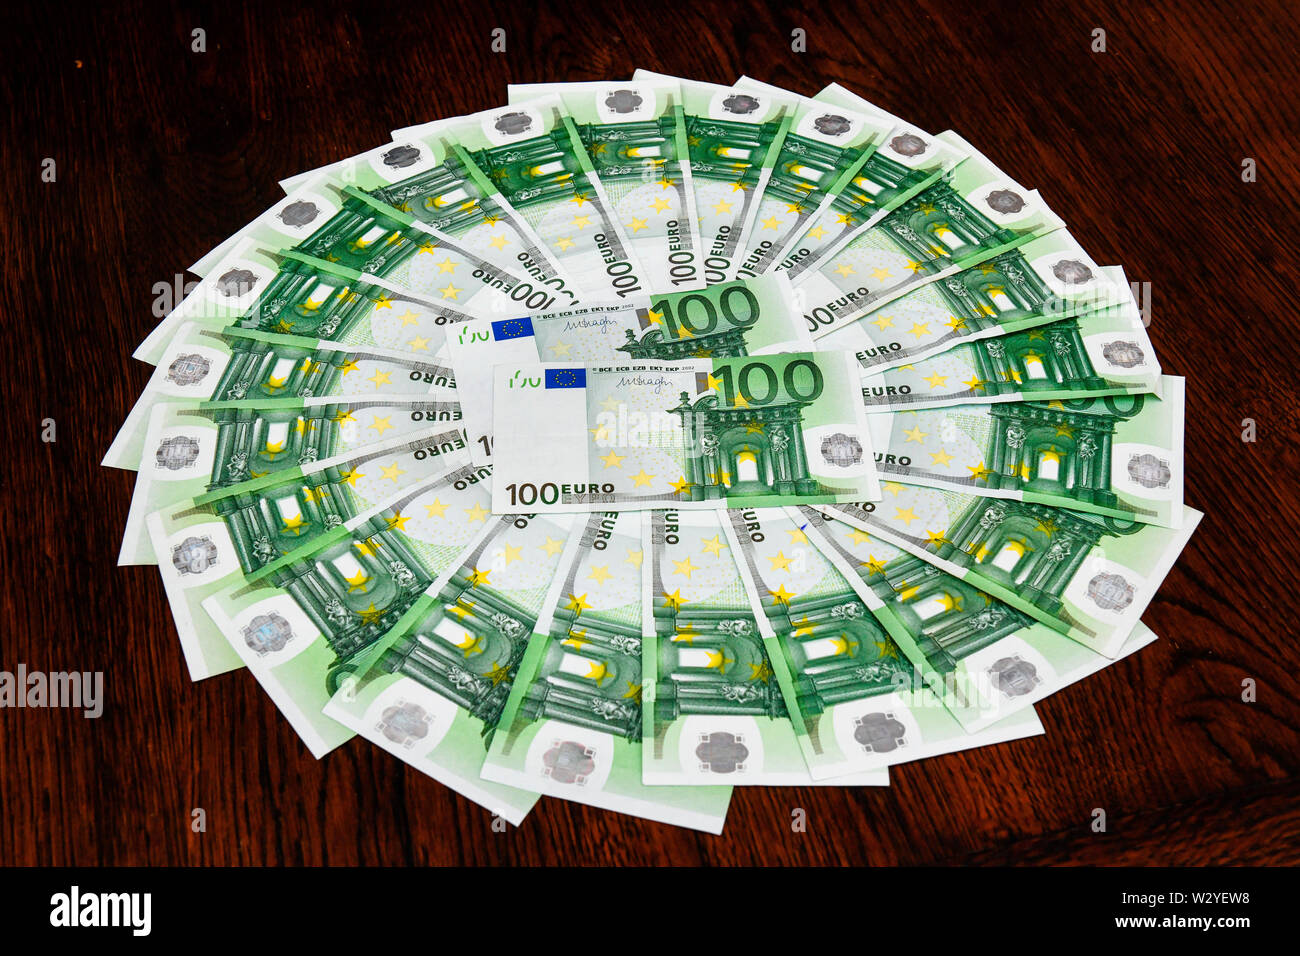 Euro notes Stock Photo